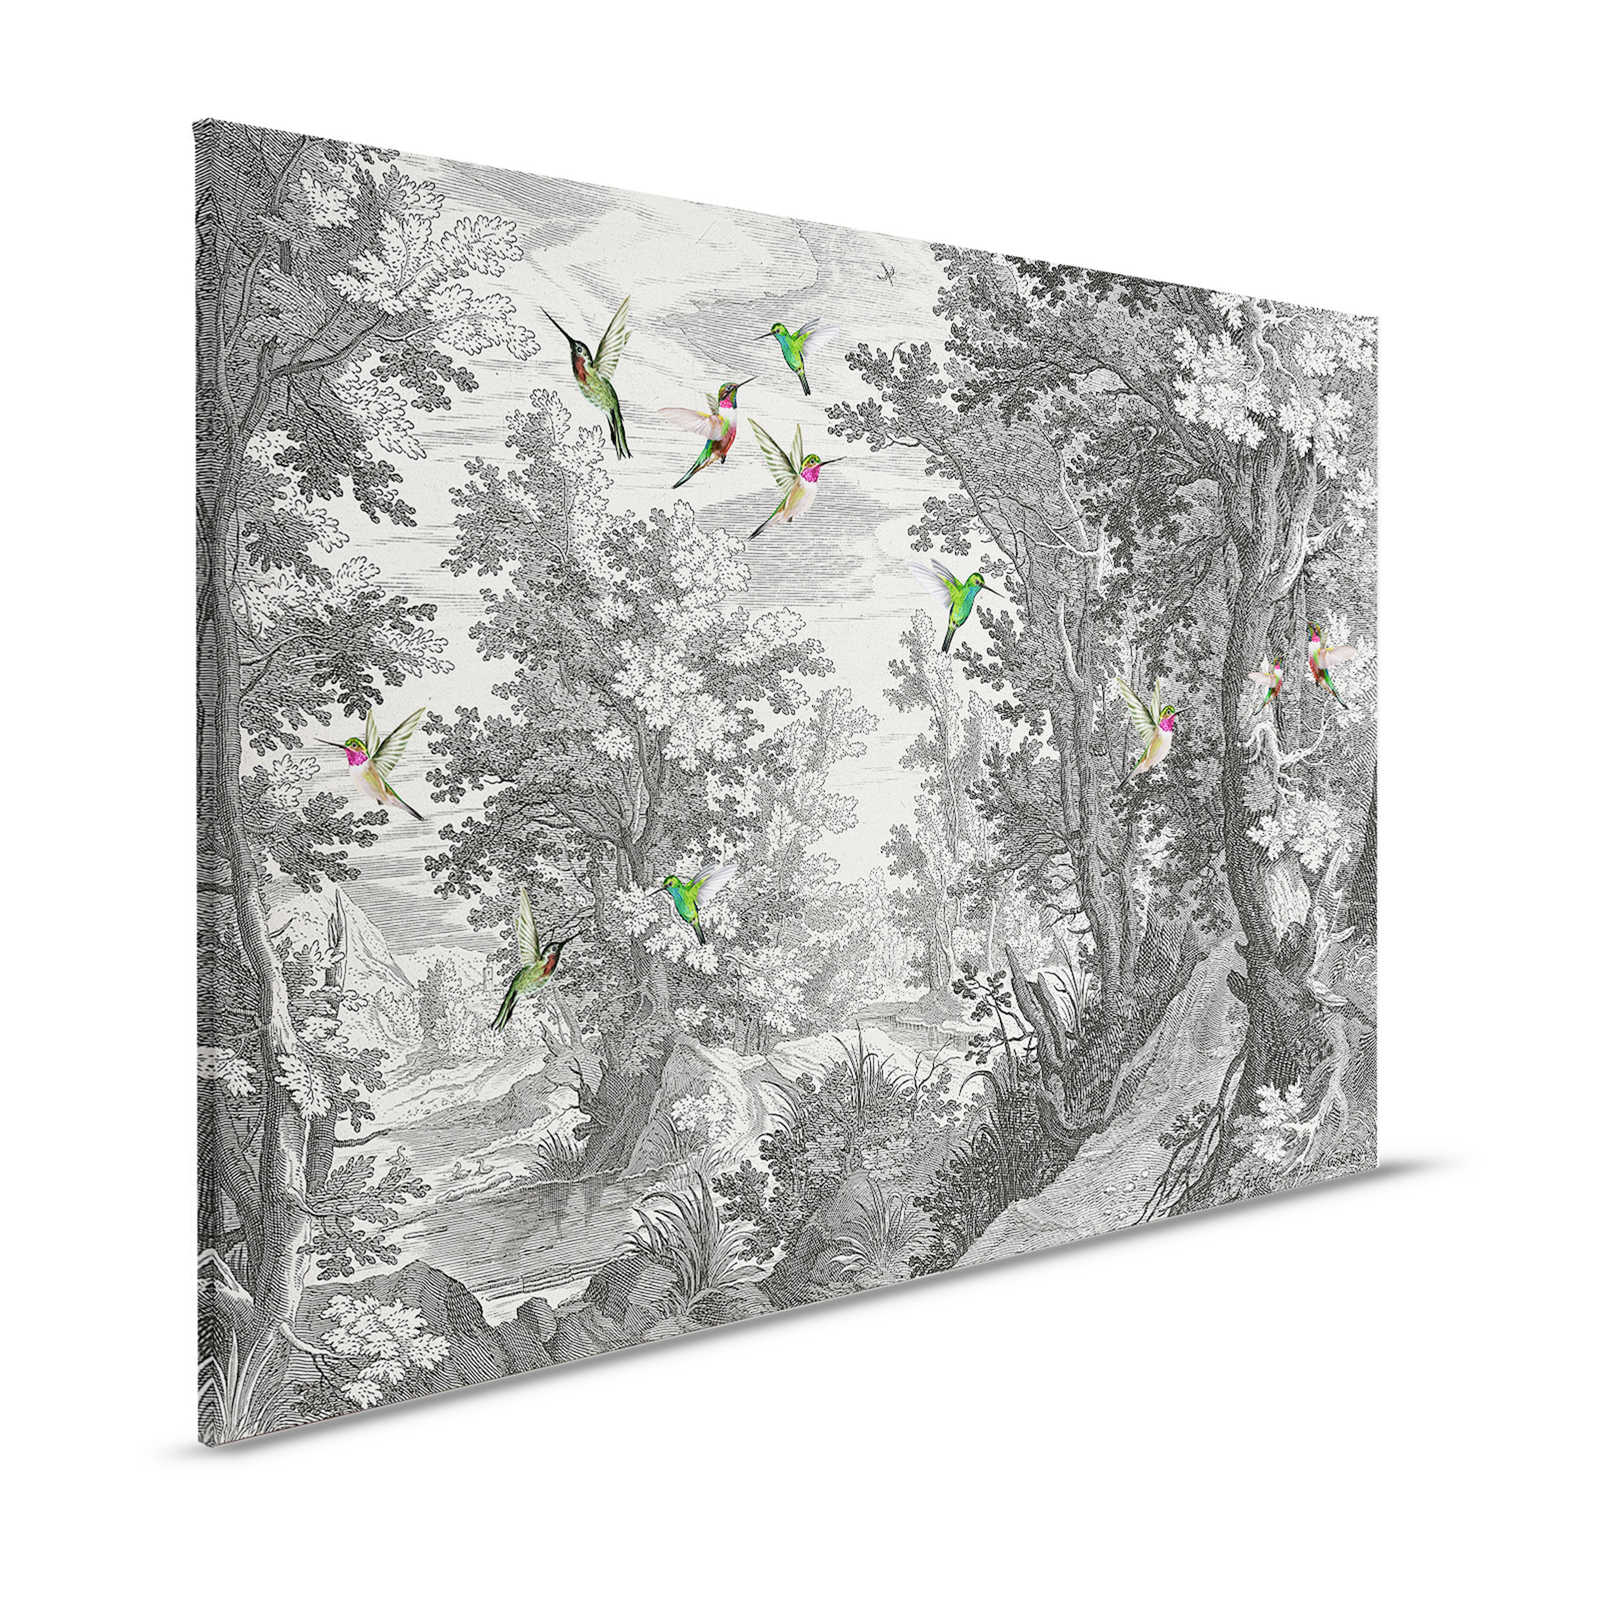 Fancy Forest 1 - Paysage toile impression d'art avec des oiseaux - 1,20 m x 0,80 m
